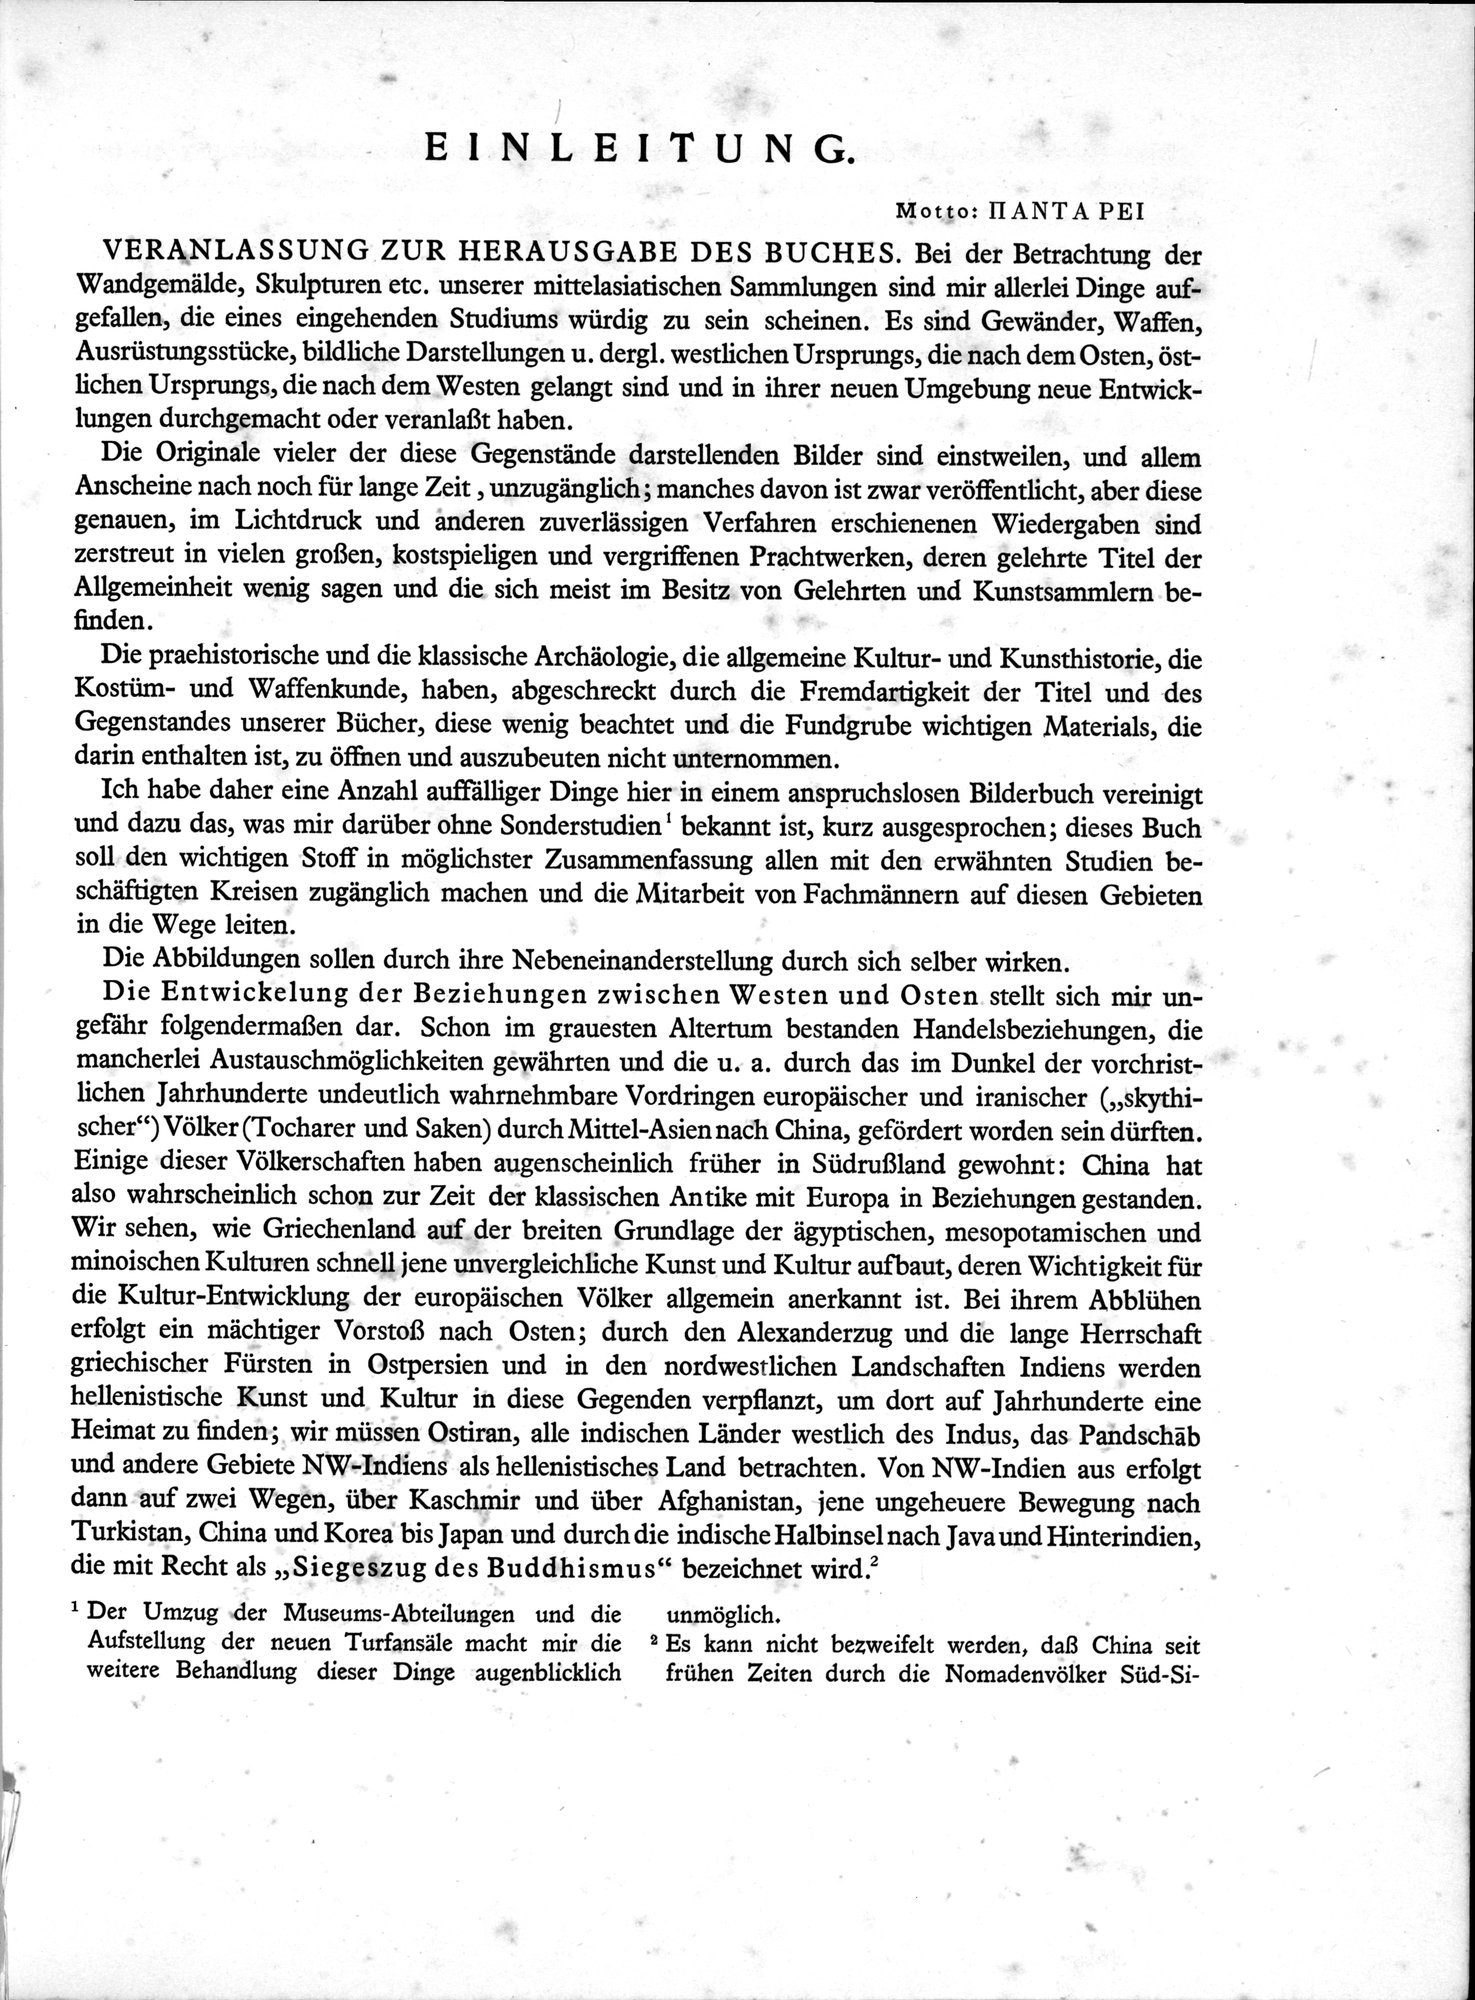 Bilderatlas zur Kunst und Kulturgeschichte Mittel-Asiens : vol.1 / Page 9 (Grayscale High Resolution Image)